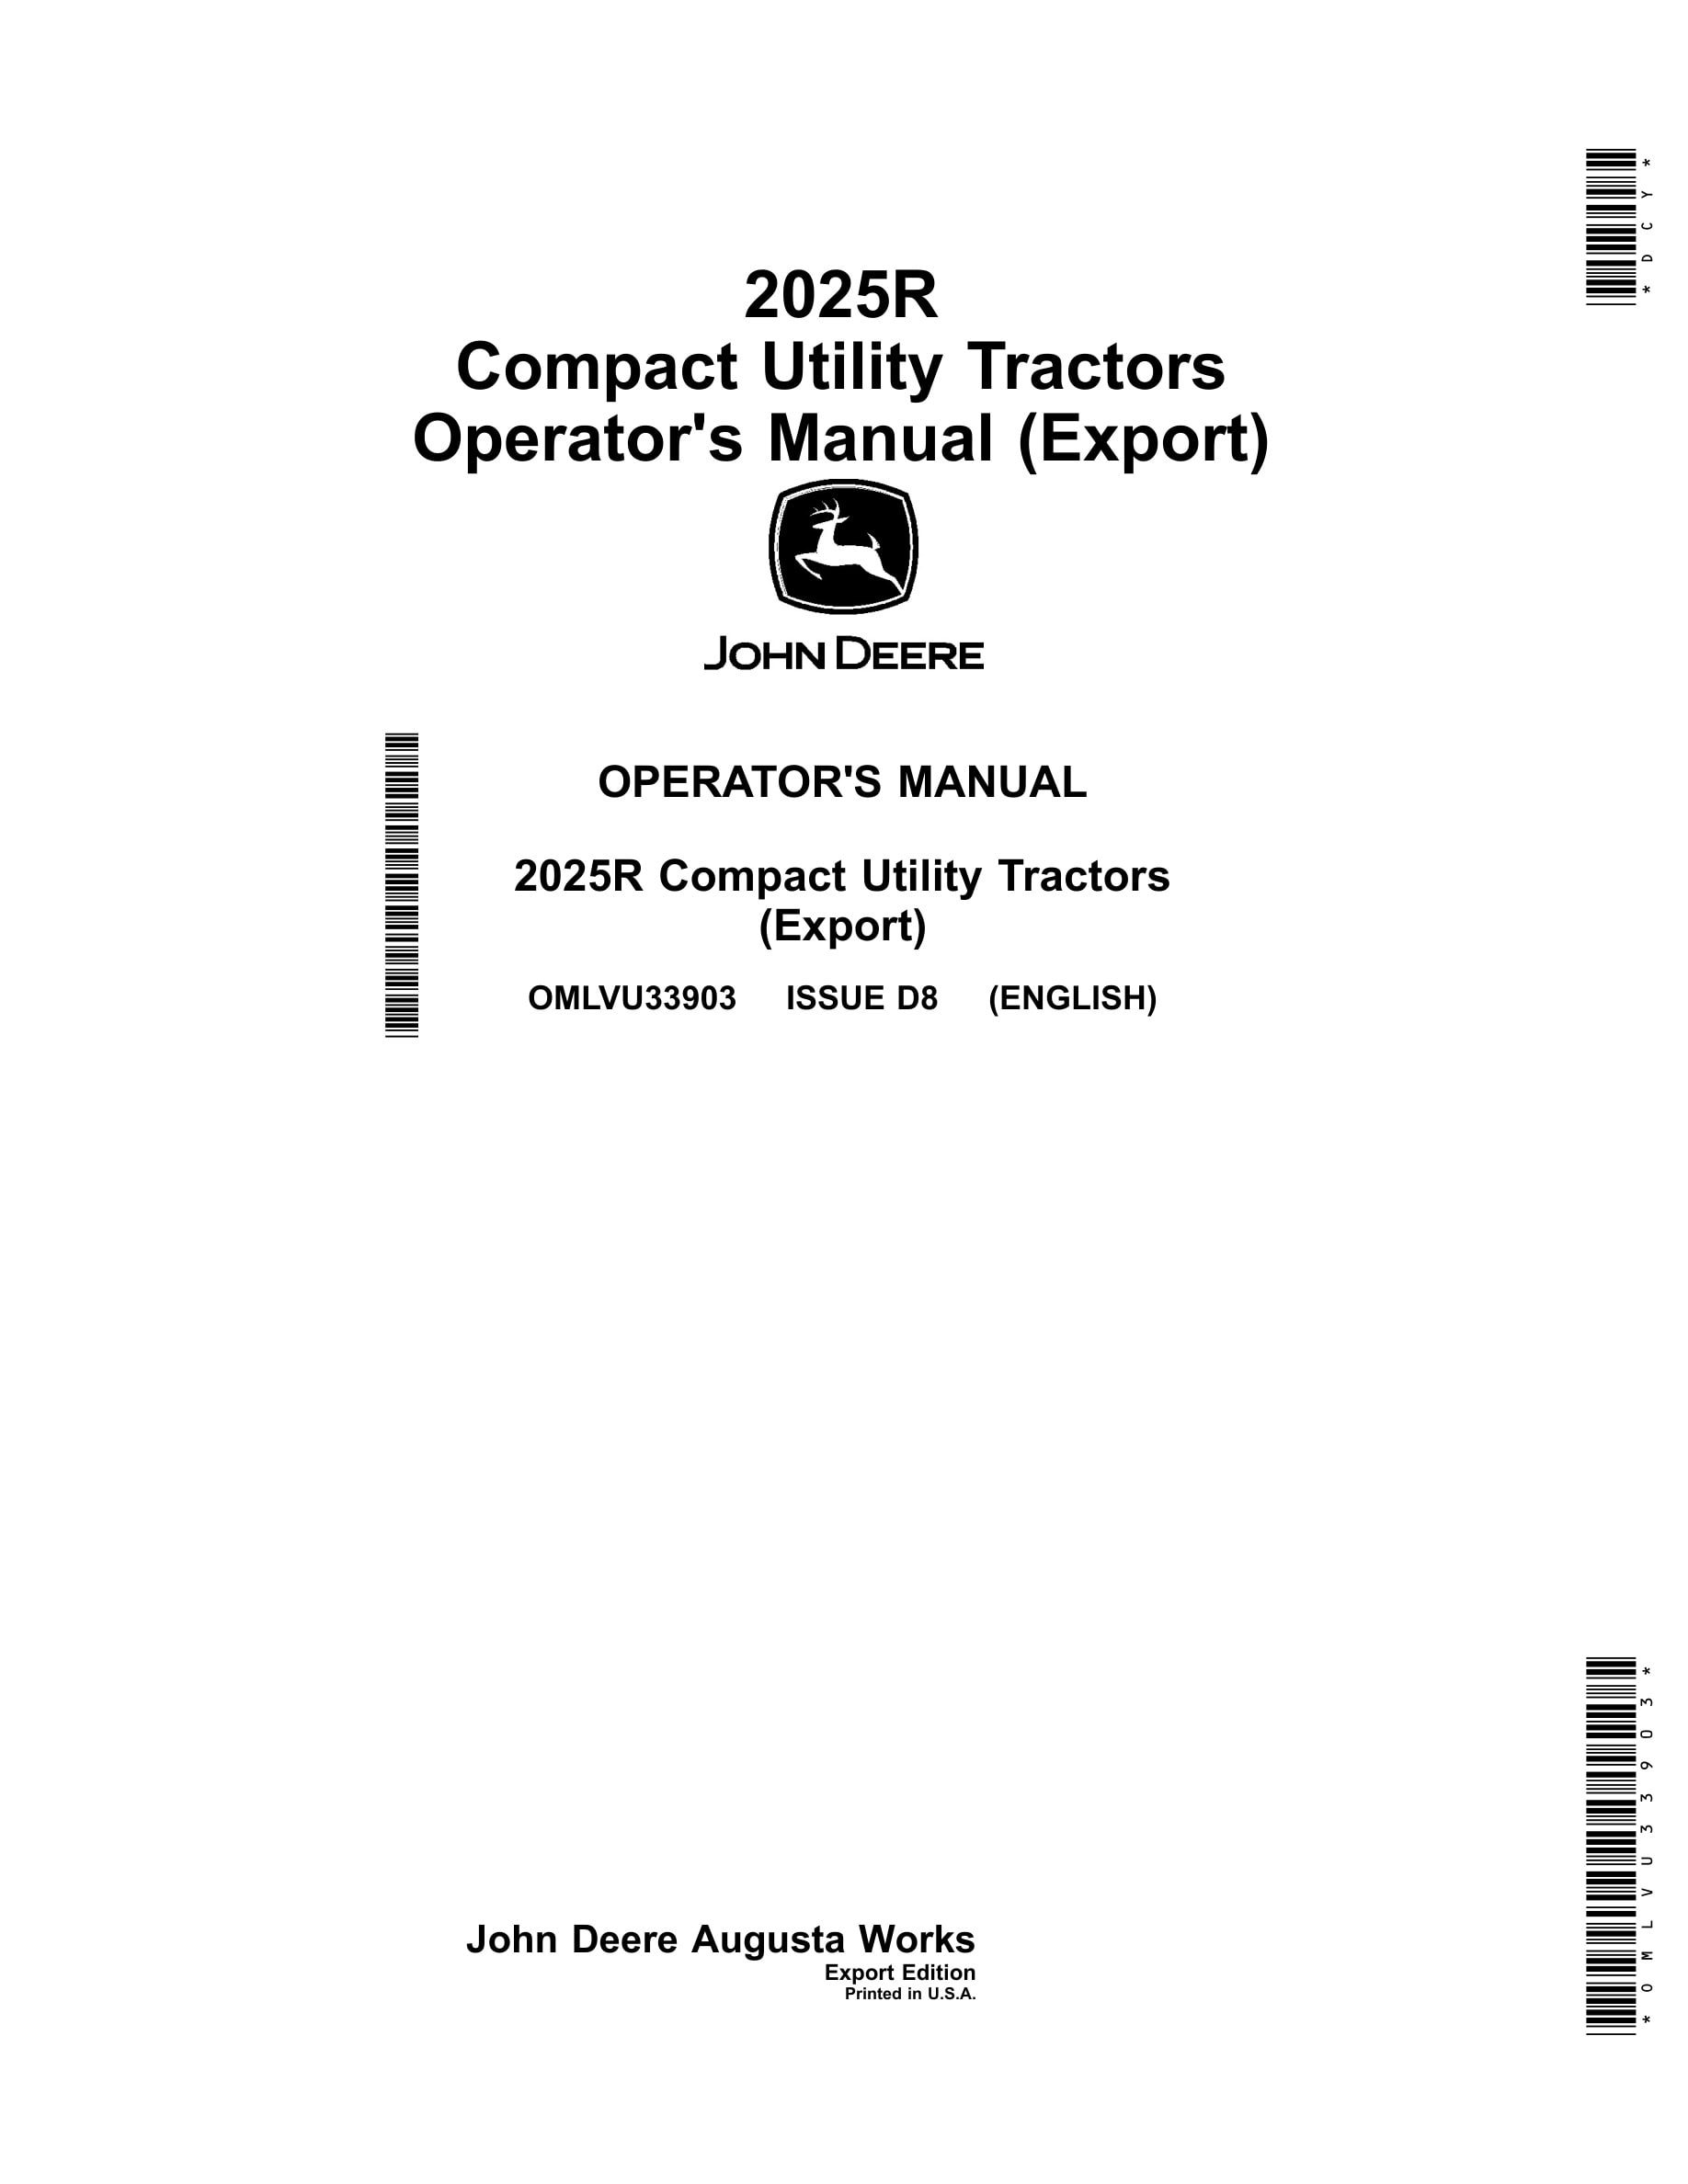 John Deere 2025r Compact Utility Tractors Operator Manuals OMLVU33903-1